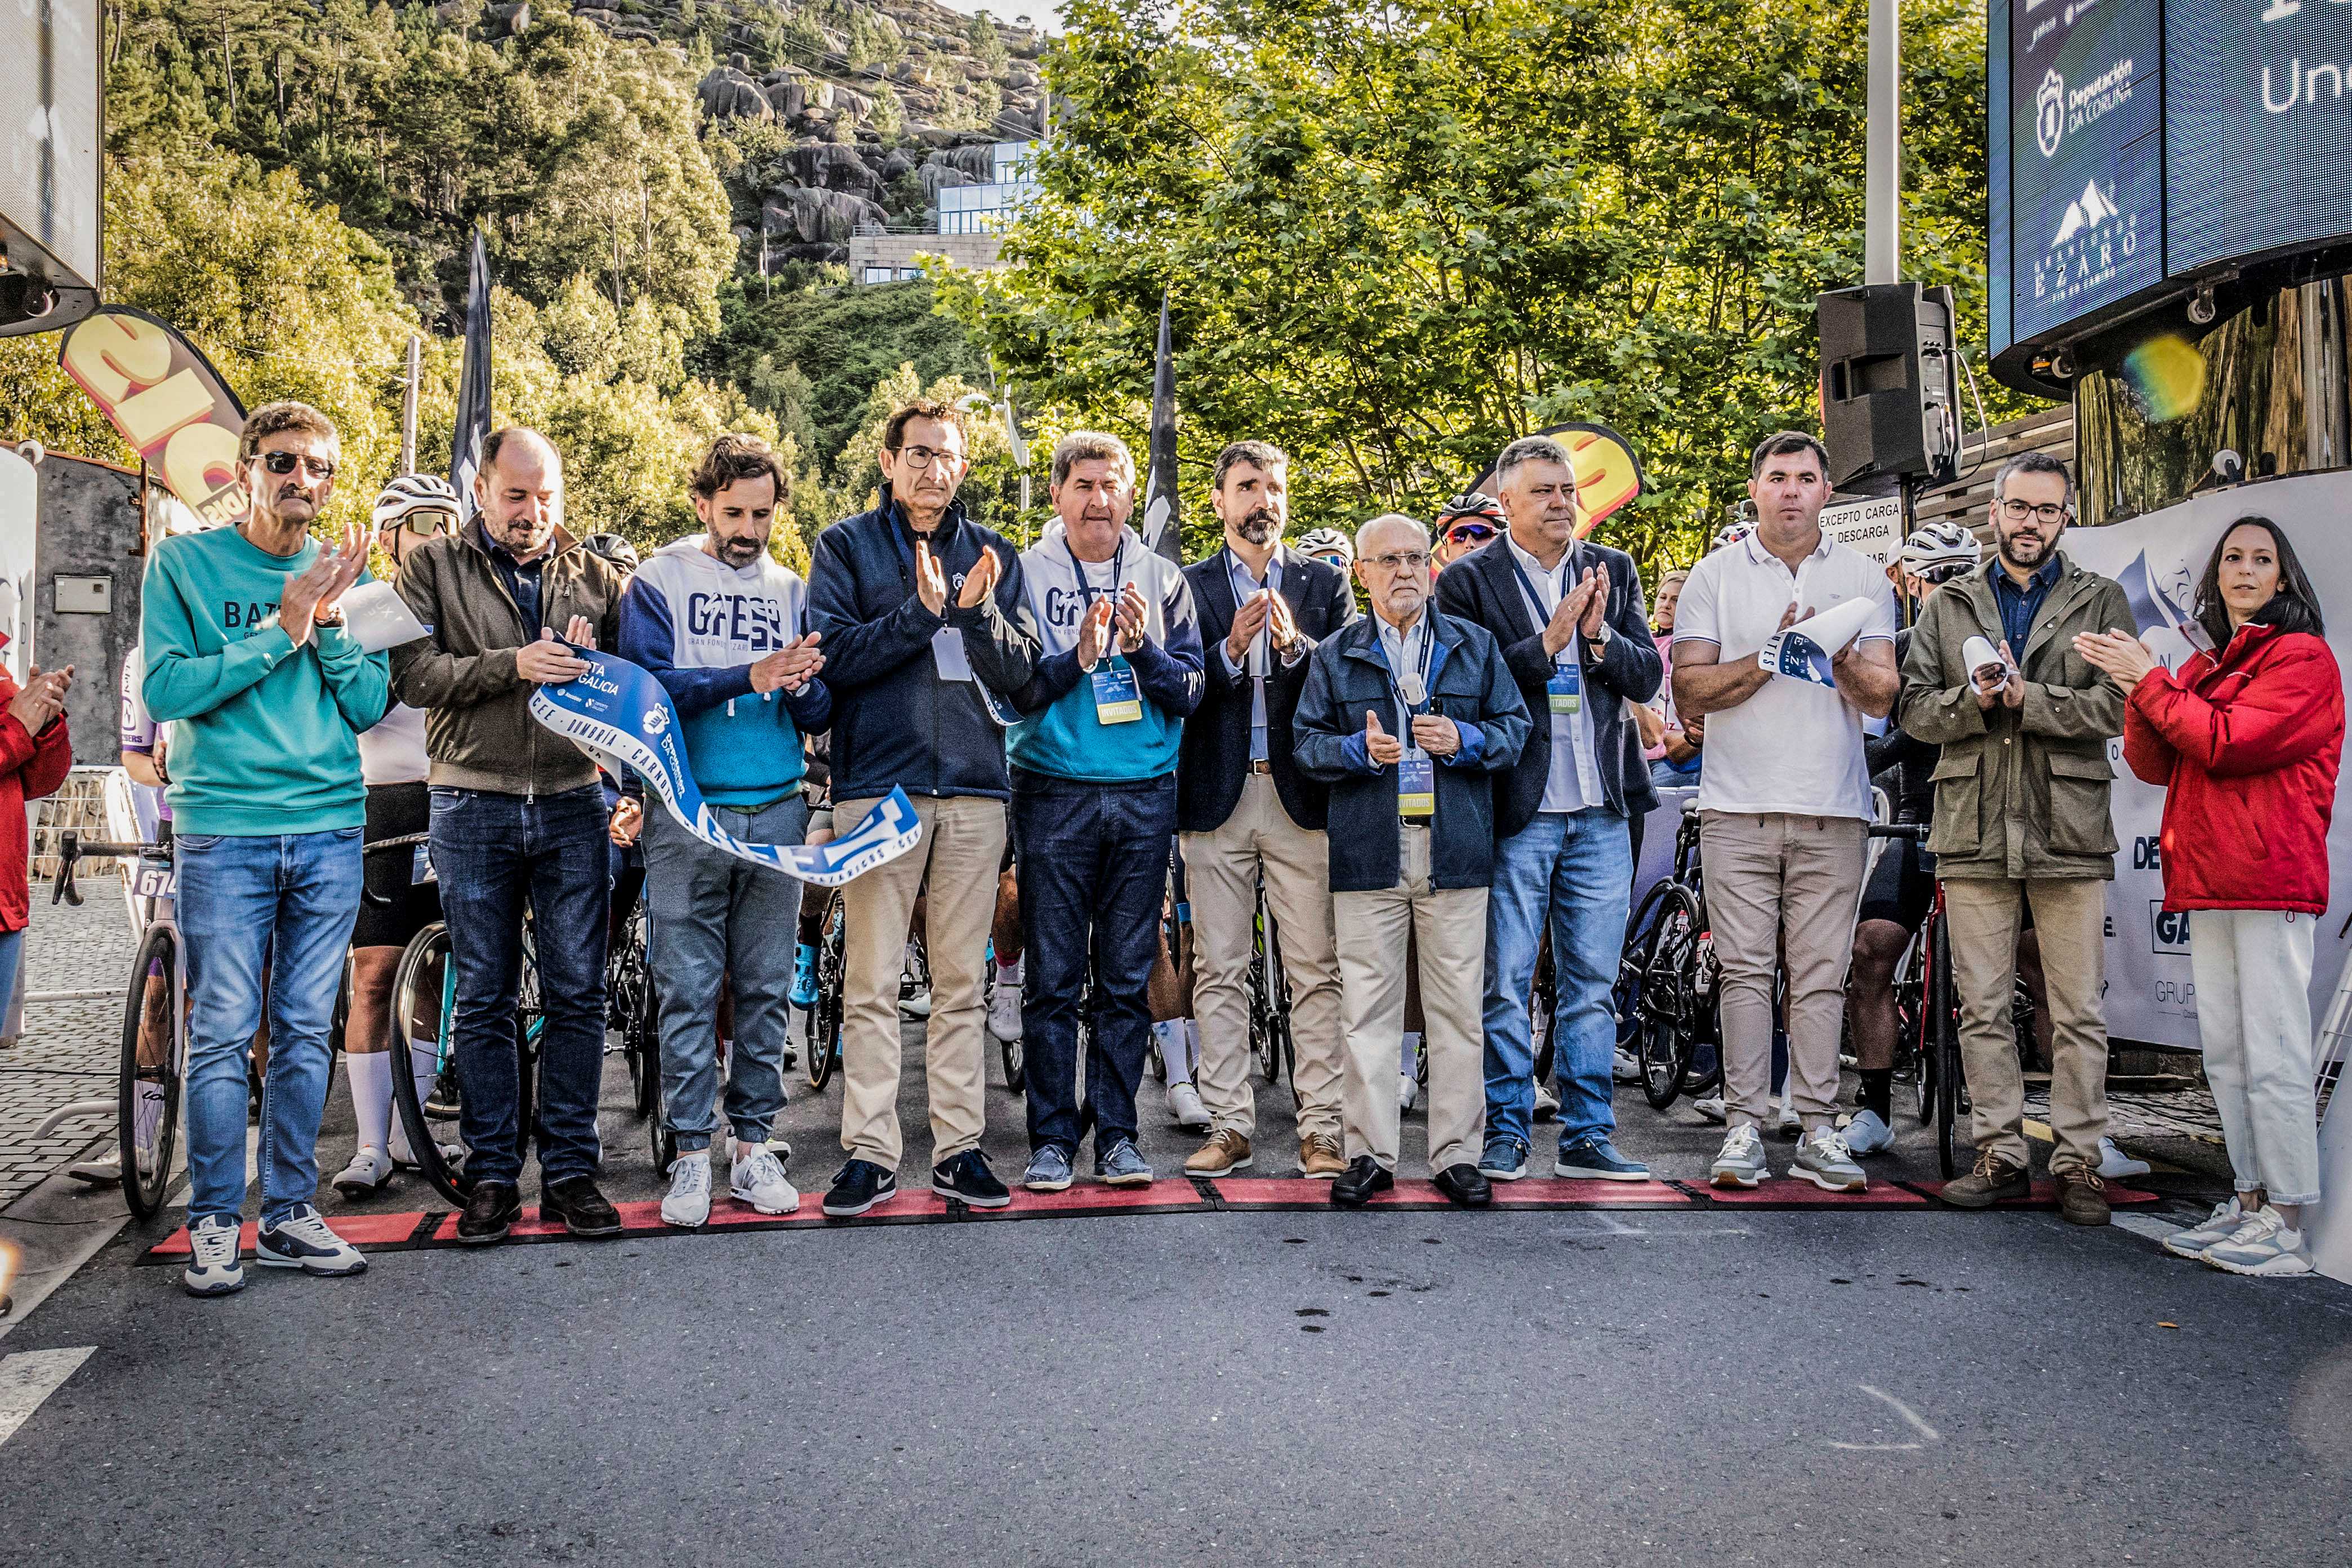 O Gran Fondo Ézaro volve a ser a gran festa do ciclismo popular de Galicia